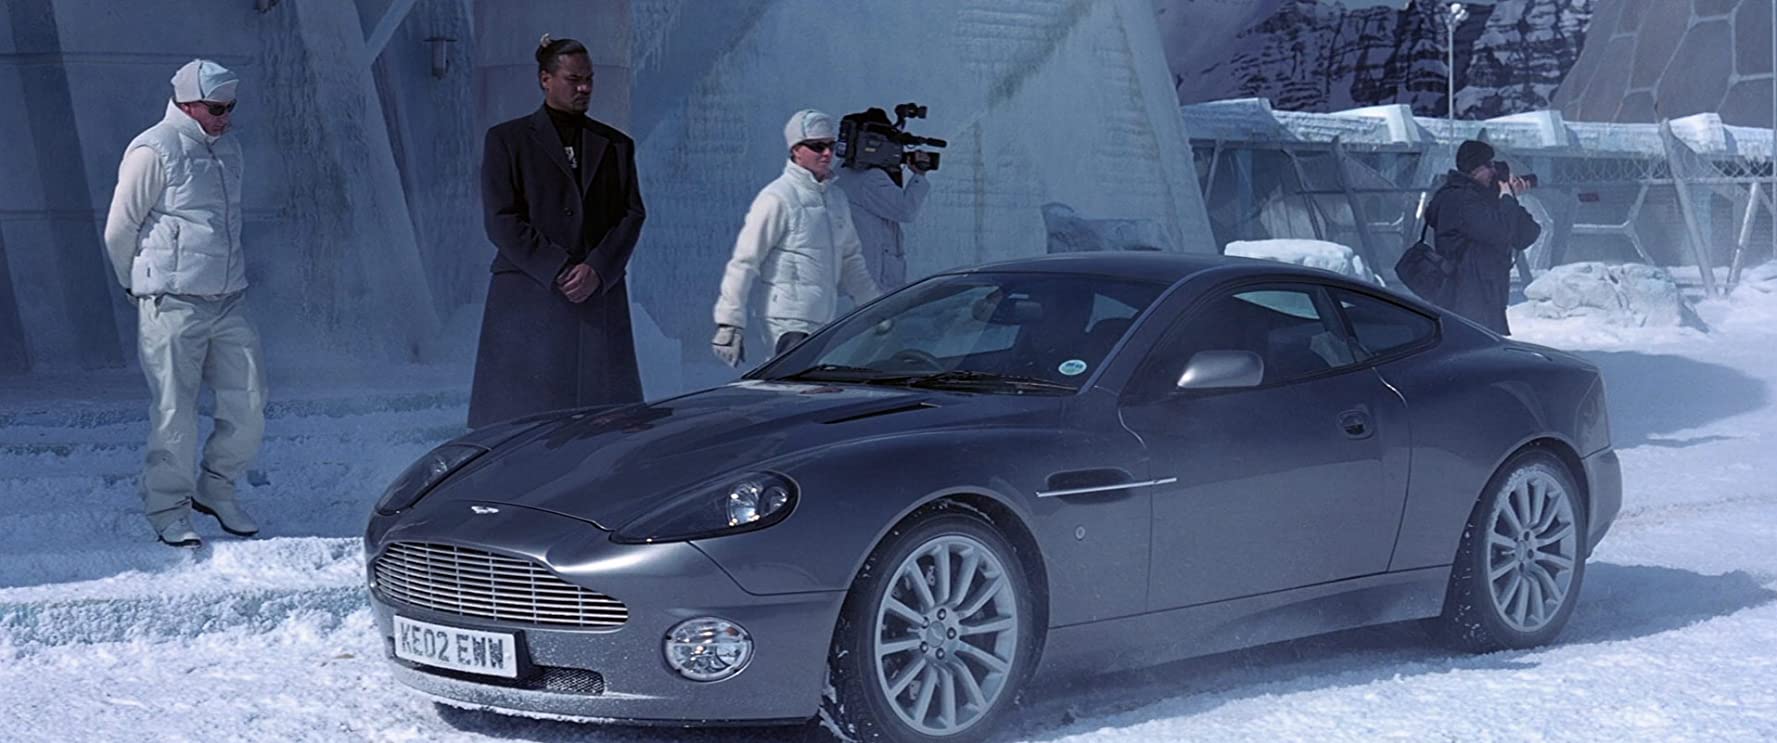 خودروی جیمز باند با حضور پیرس برازنان در فیلم روزی دیگر بمیر در میان مناظر برفی